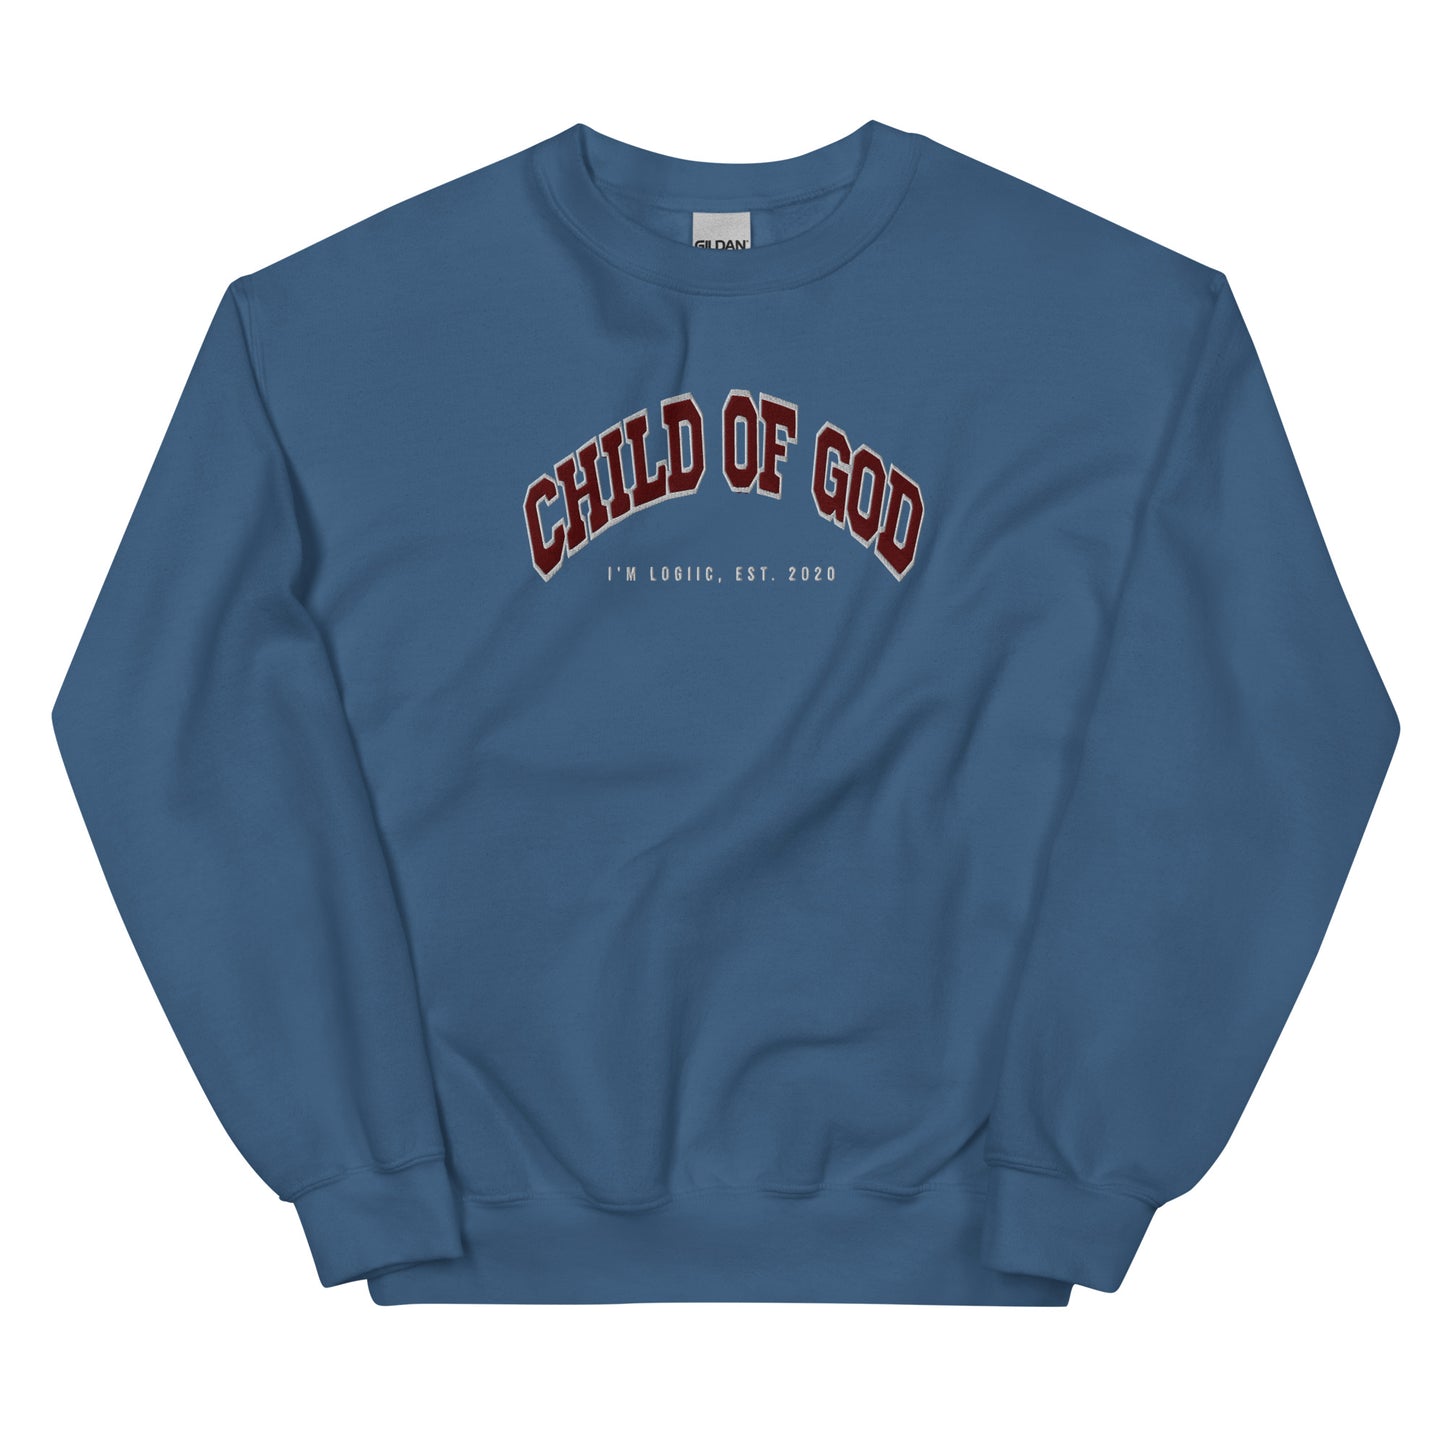 Child of God Unisex Sweatshirt - Indigo Blue / S